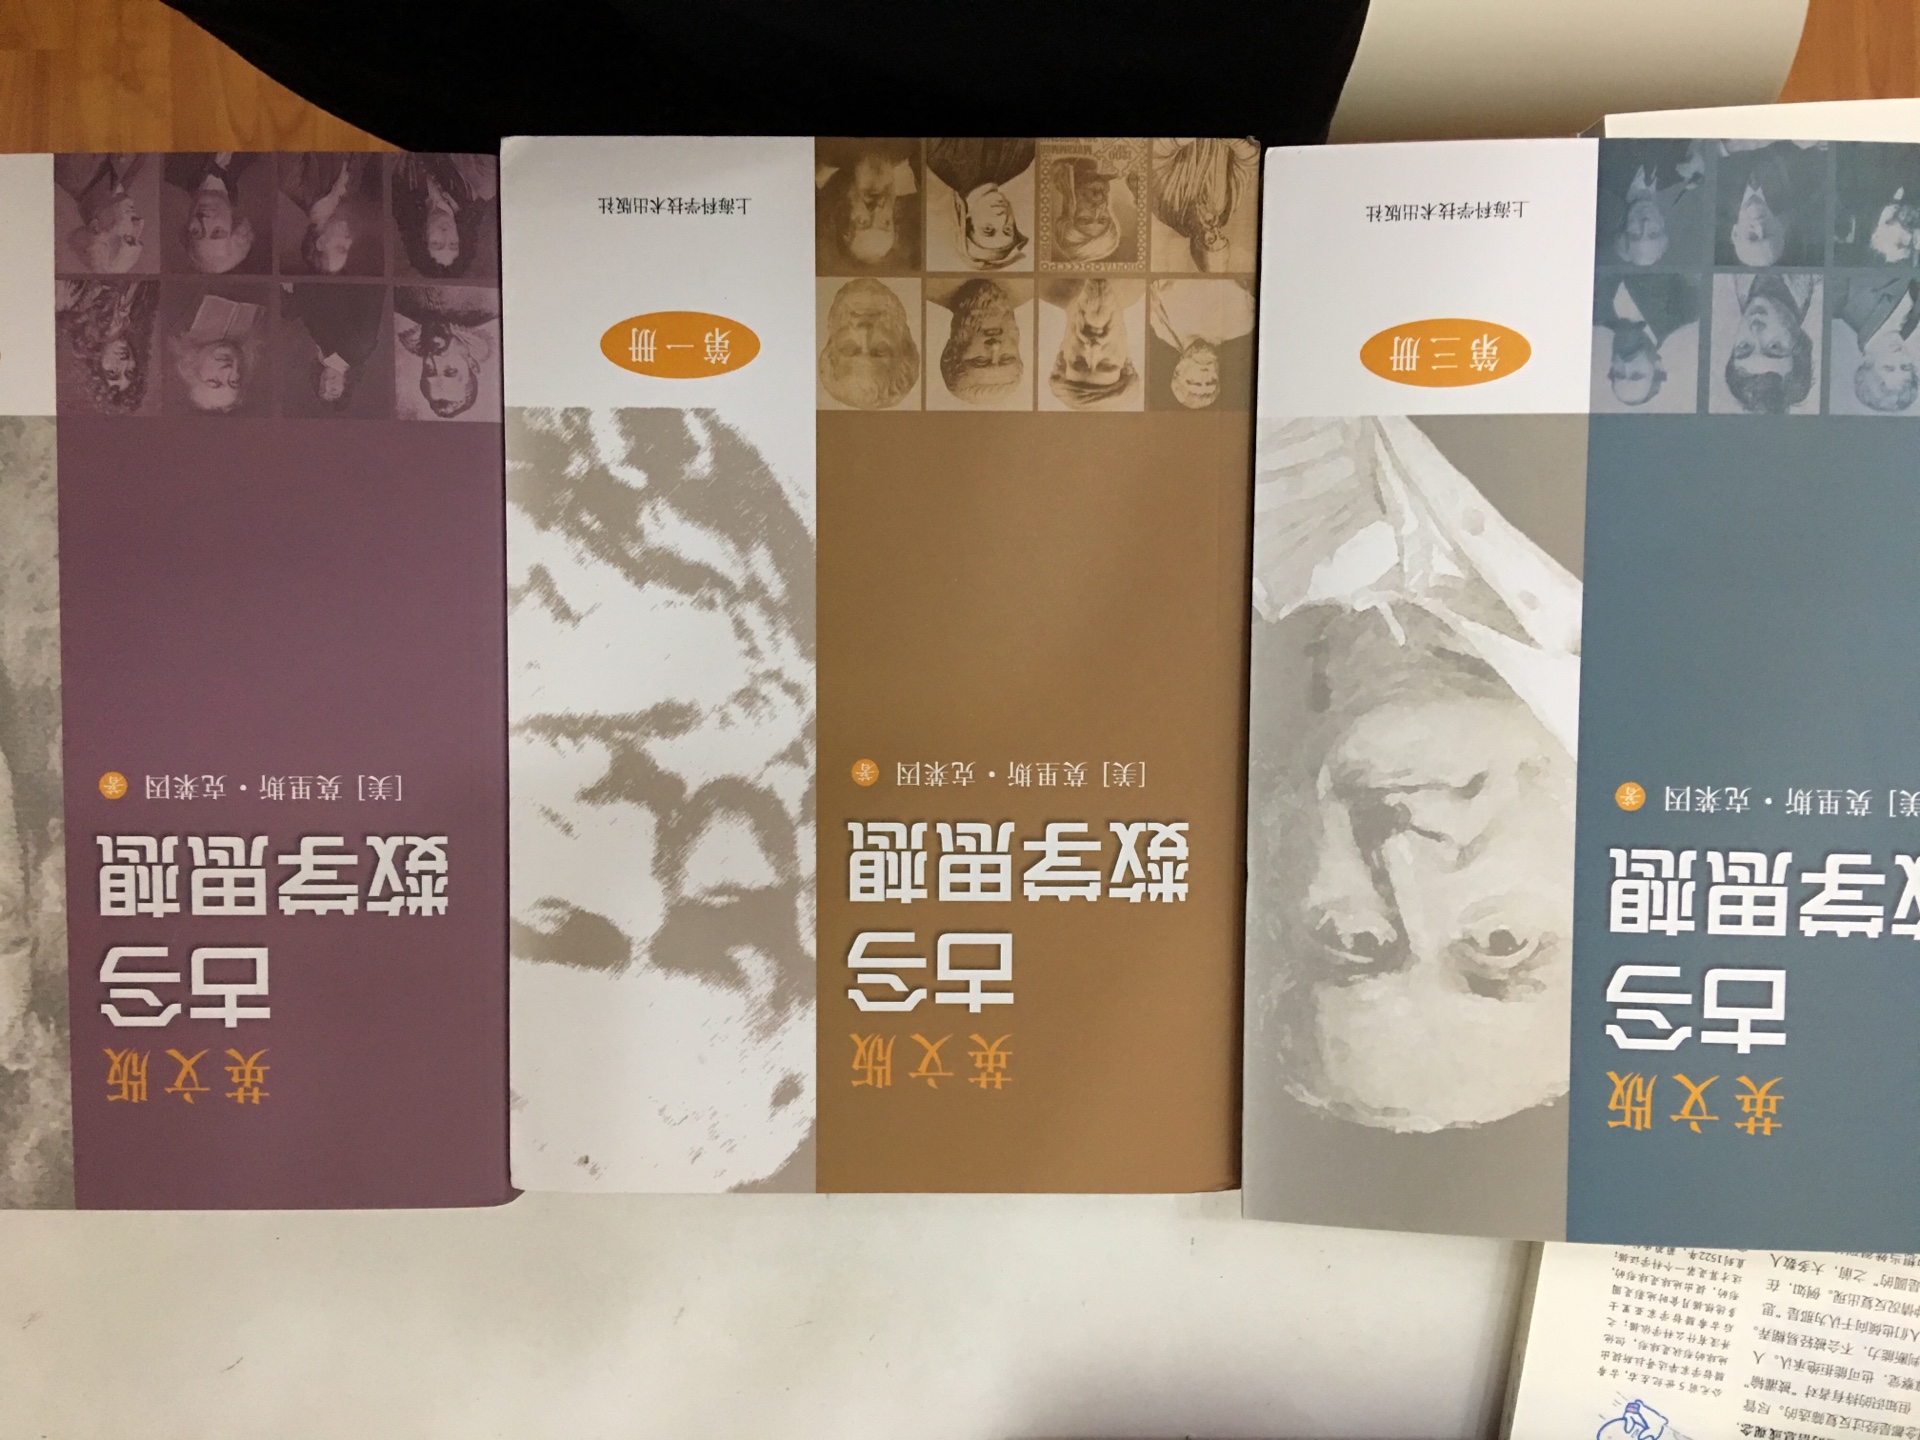 十几年前就买过中文翻译版，这次忍不住还是把英文版买了，不错，可以是影印版的，如果是油印版的就更好了。